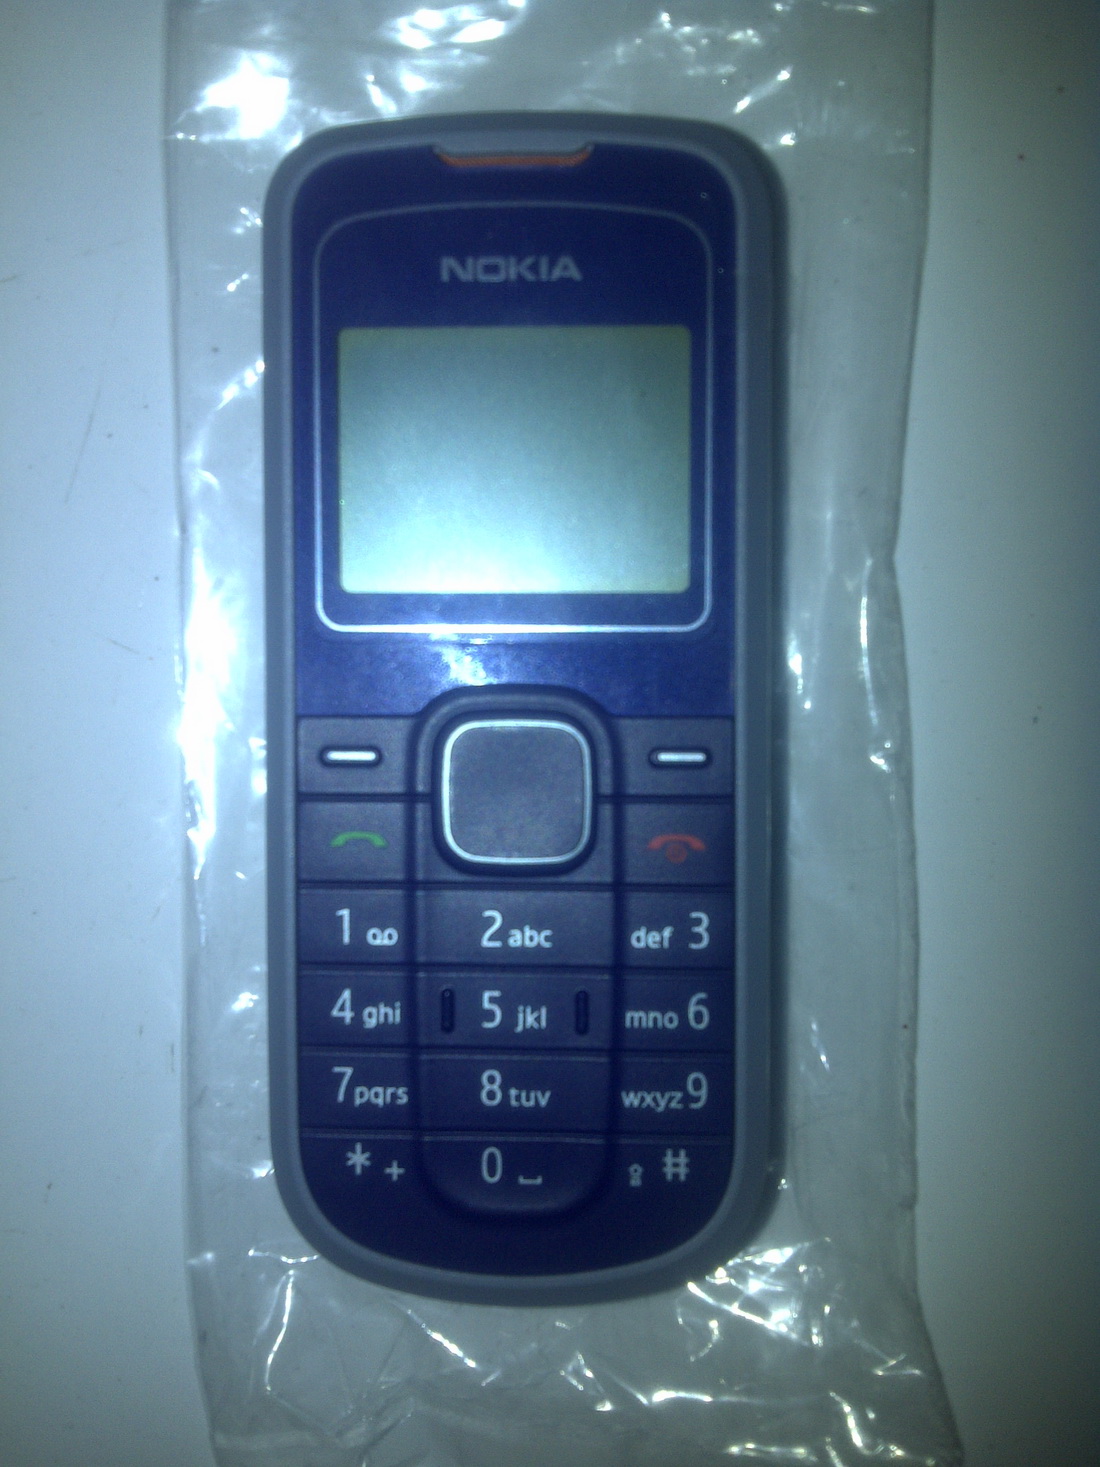 Hp Nokia Tercanggih Jaman Dulu - Your Blog Update News